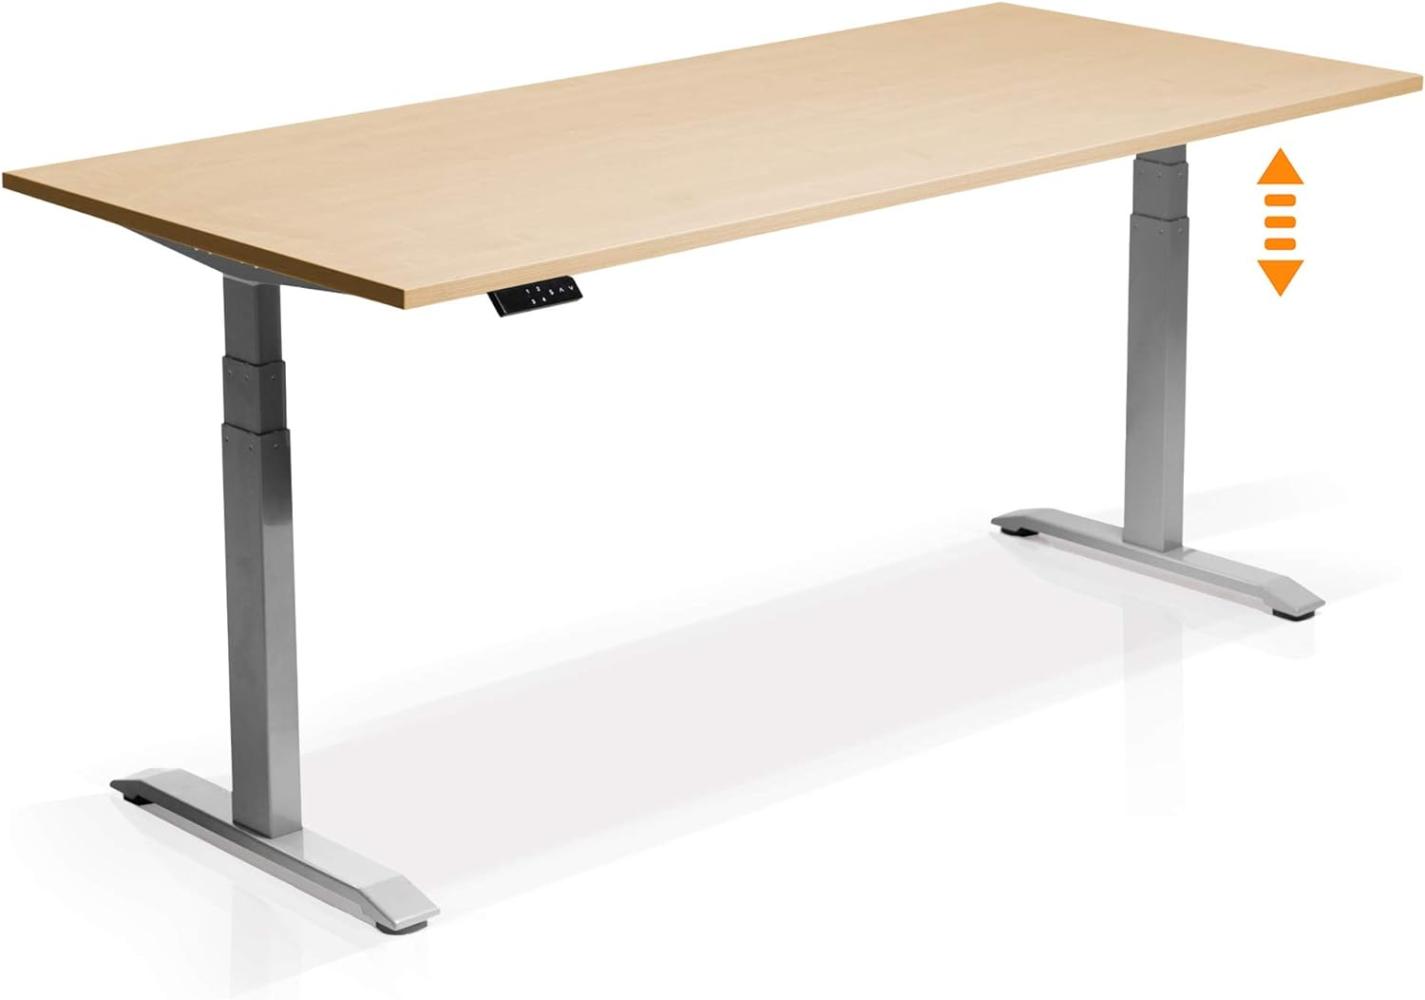 Möbel-Eins OFFICE ONE elektrisch höhenverstellbarer Schreibtisch / Stehtisch, Material Dekorspanplatte grau ahornfarbig 180 x 80 cm Bild 1